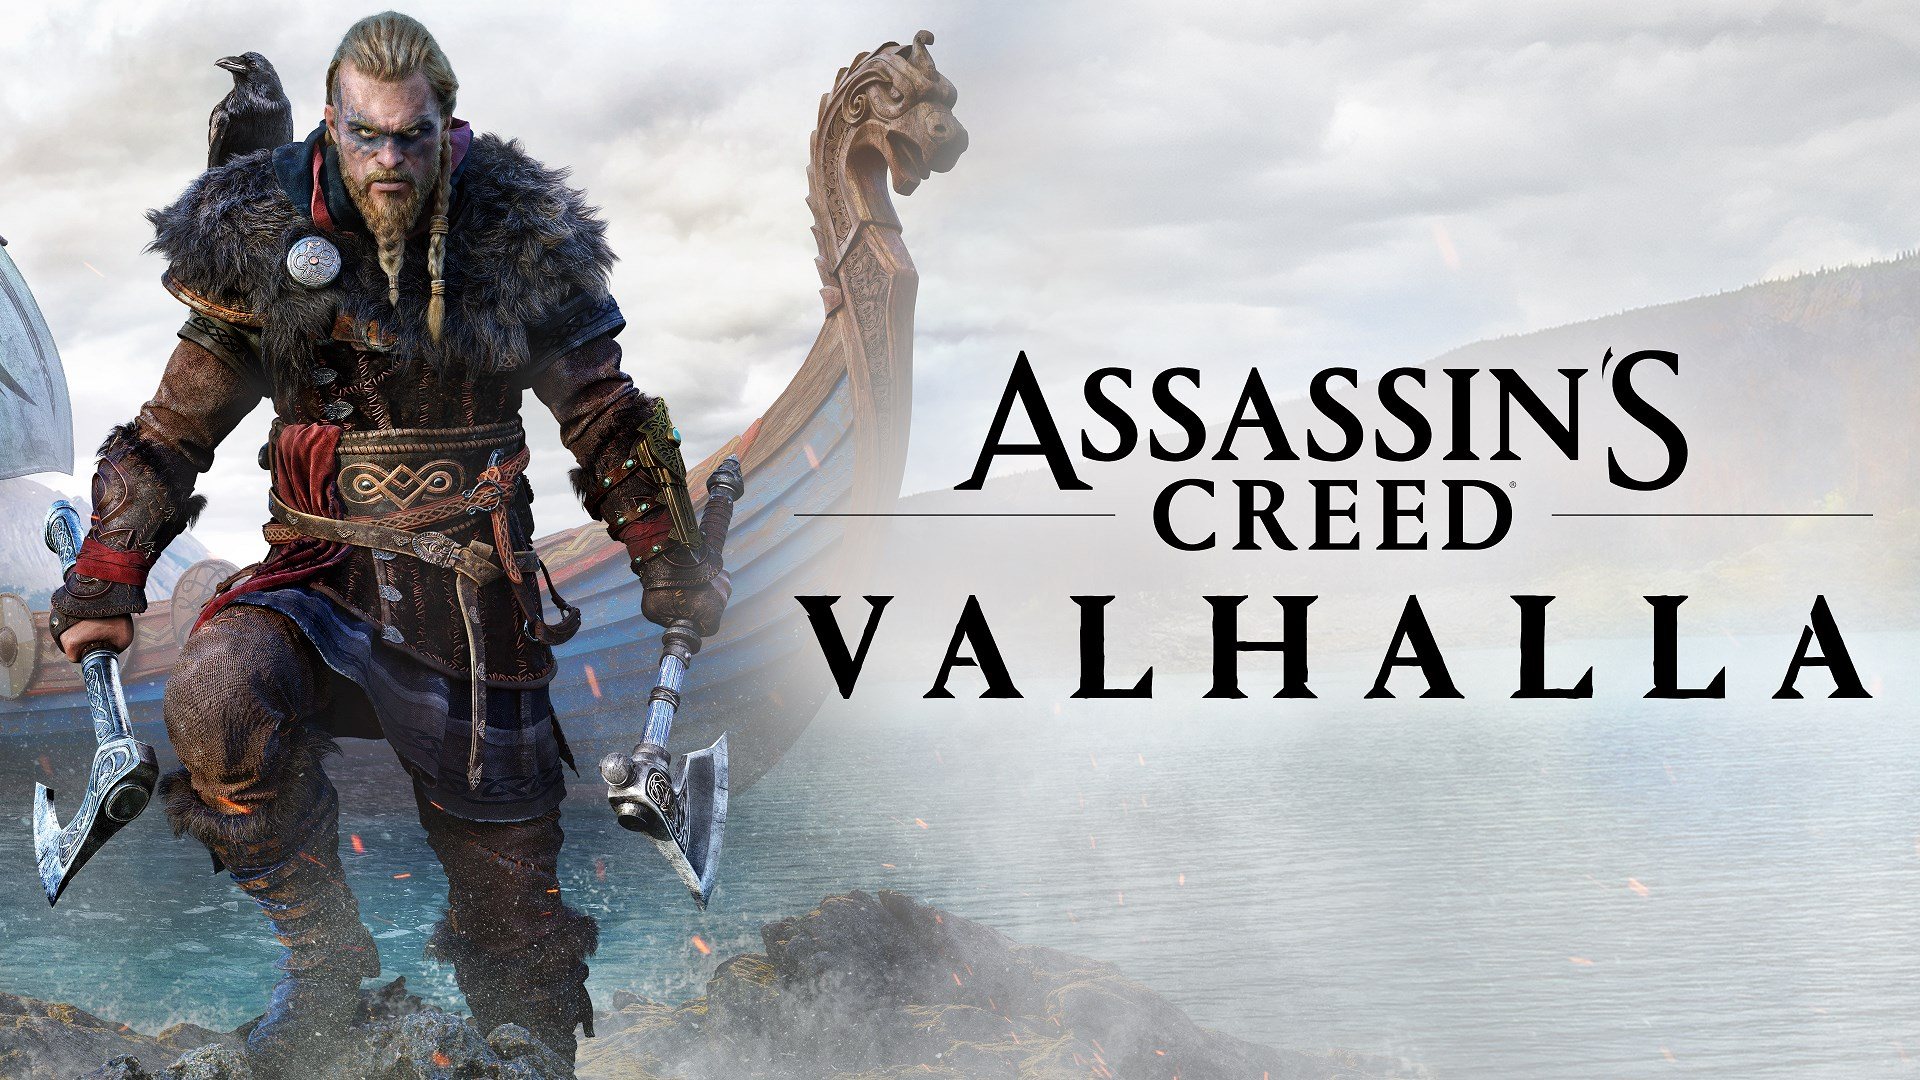 Assassin's Creed Valhalla (AC Valhalla) Achievements